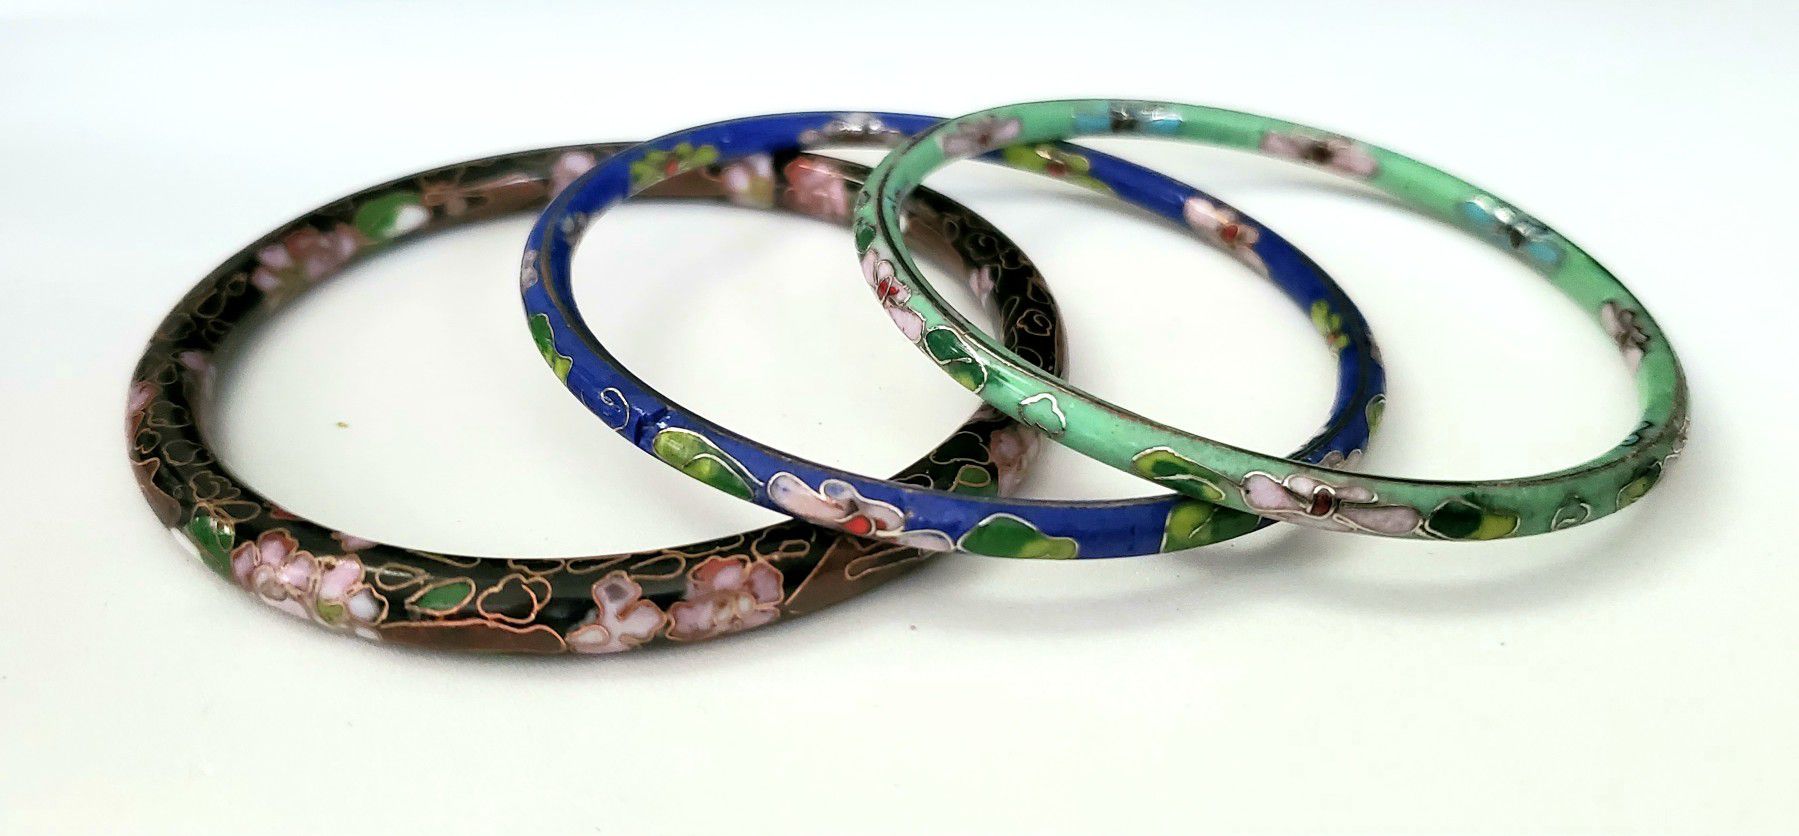 Three beautiful Cloisonne Bangle Bracelets - different colors - floral design.